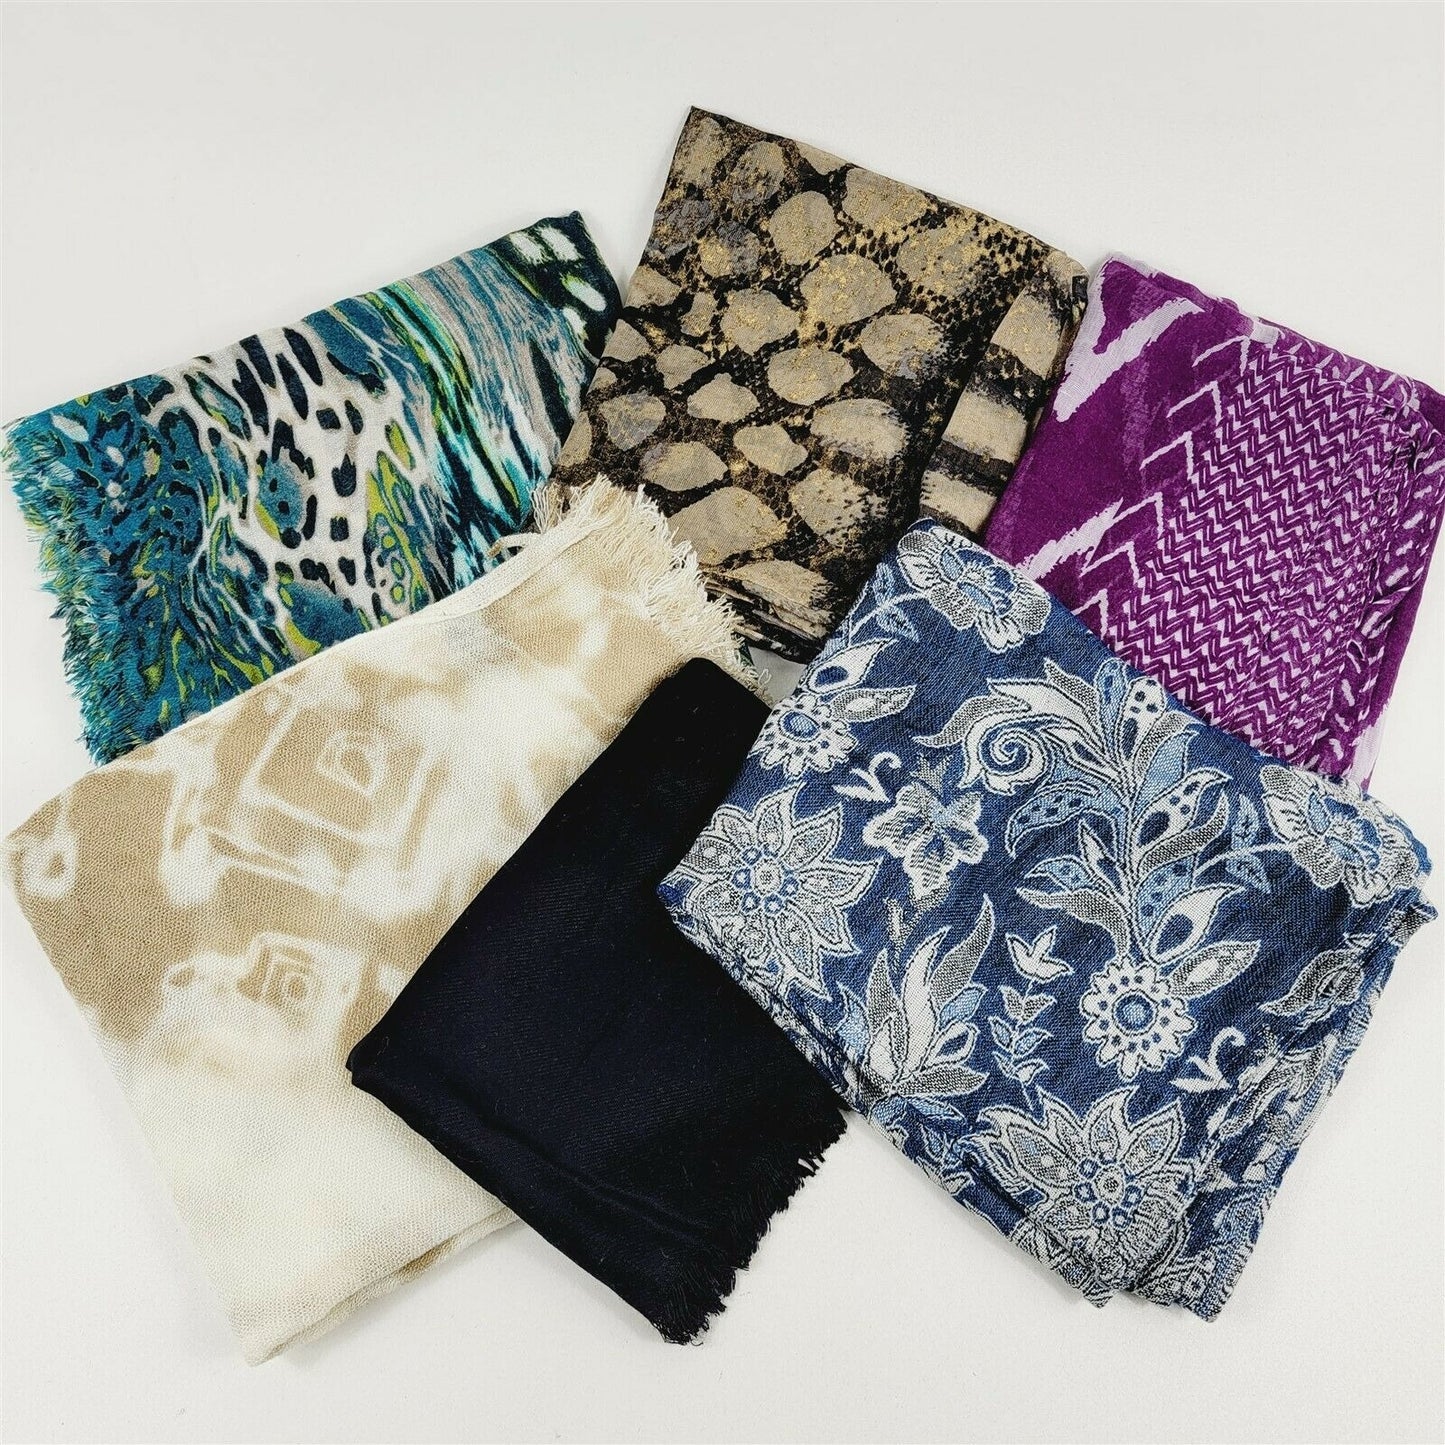 6 Multi-Color Fringe Scarves Shawls Blue Floral, Solid Black, Beige, Purple